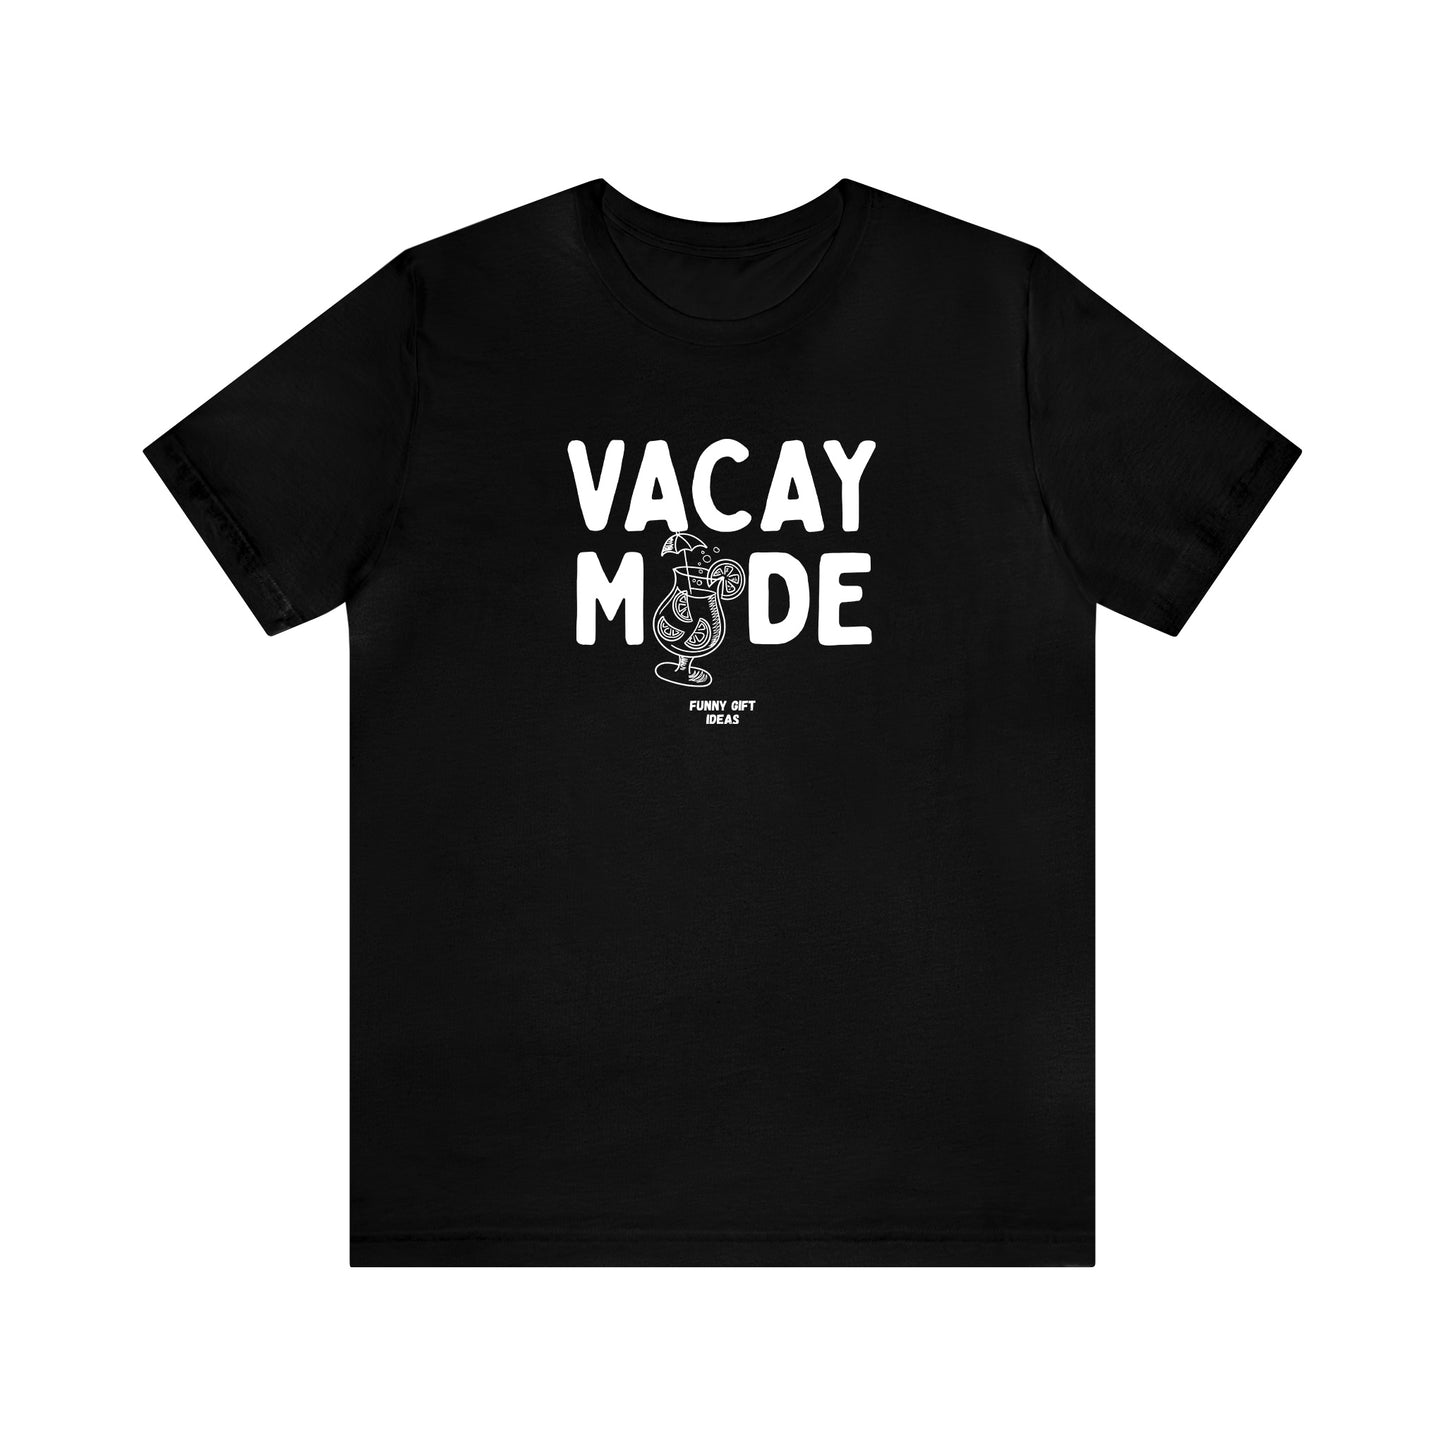 Funny Shirts for Women - Vacay Mode - Women's T Shirts